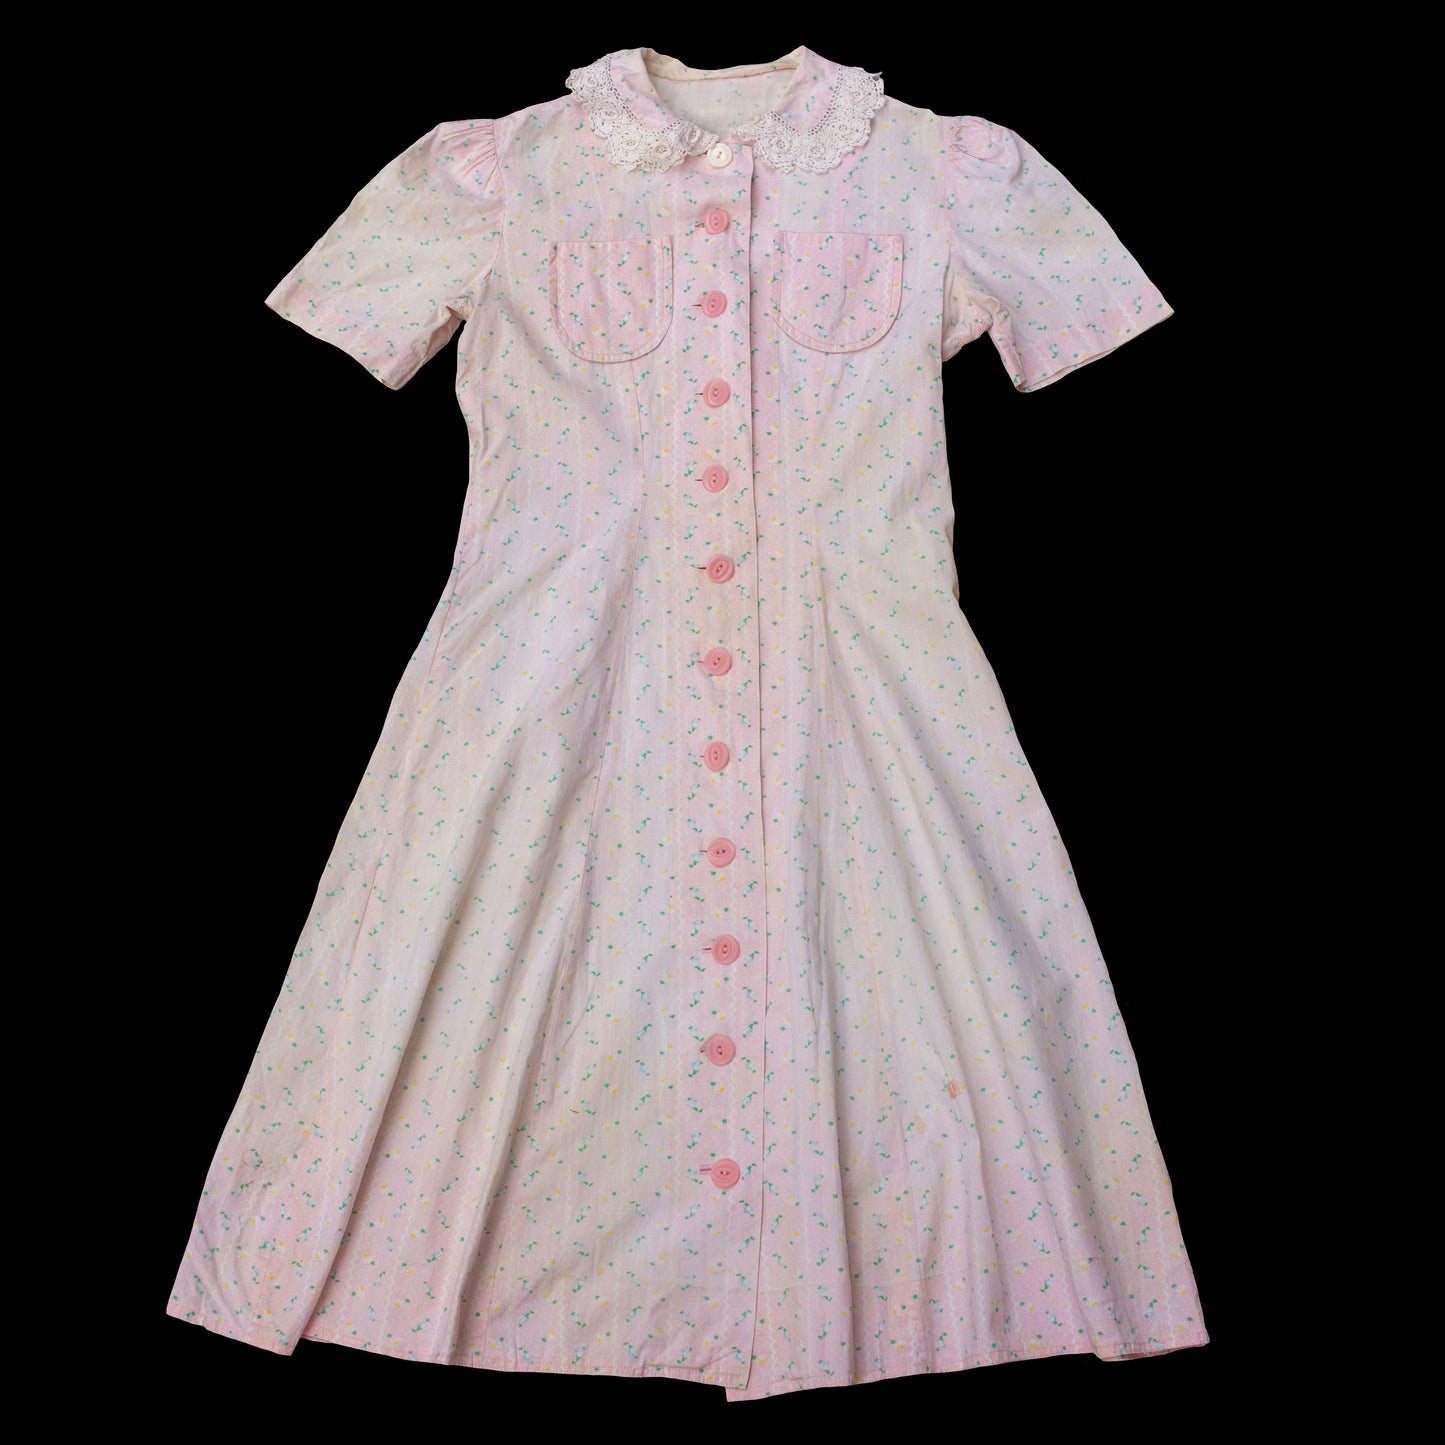 Vintage 1930s Pink Floral Cotton Dress Button Up